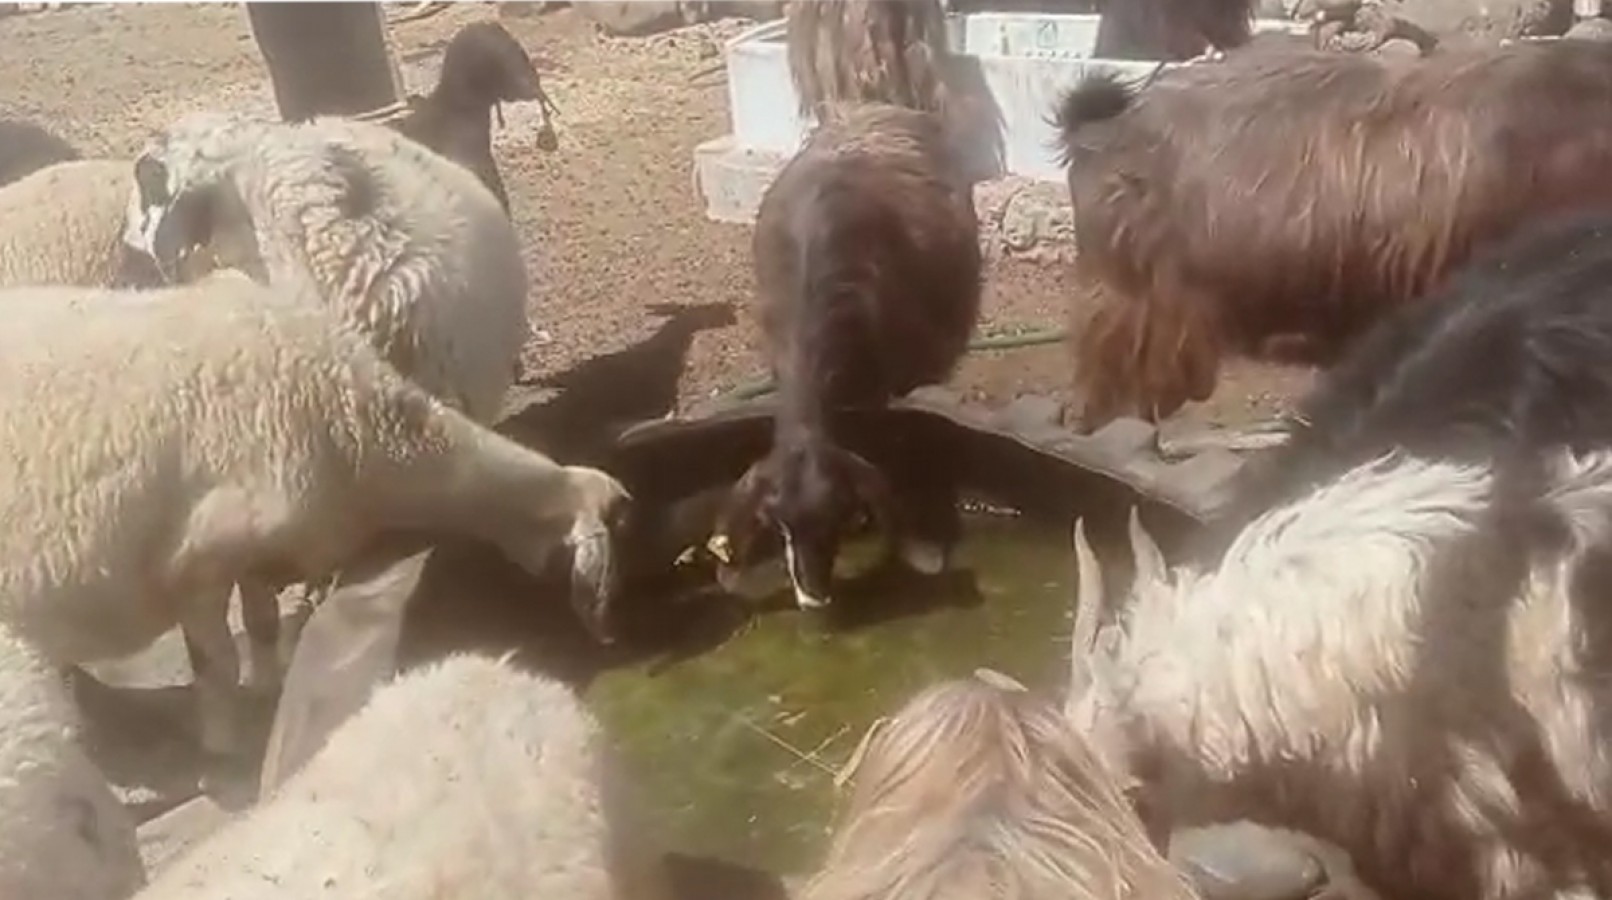 Viranşehir'de hayvanlar susuz kaldı!